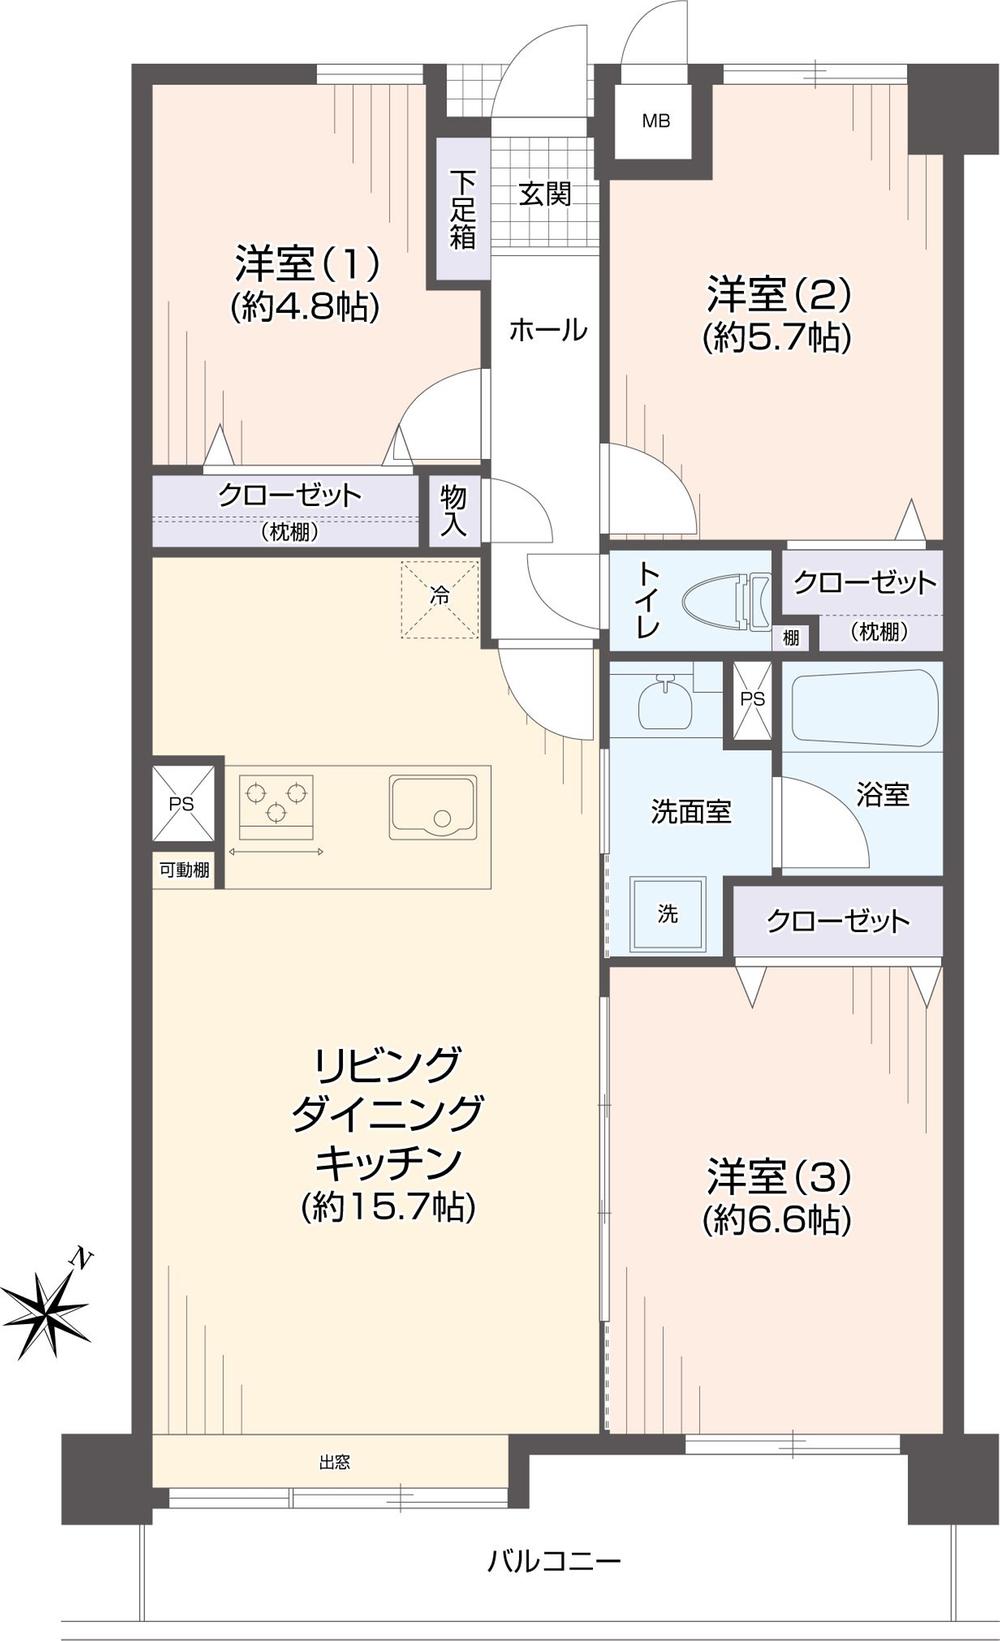 コアマンション和白東パセオ【オーシャンビュー10階】